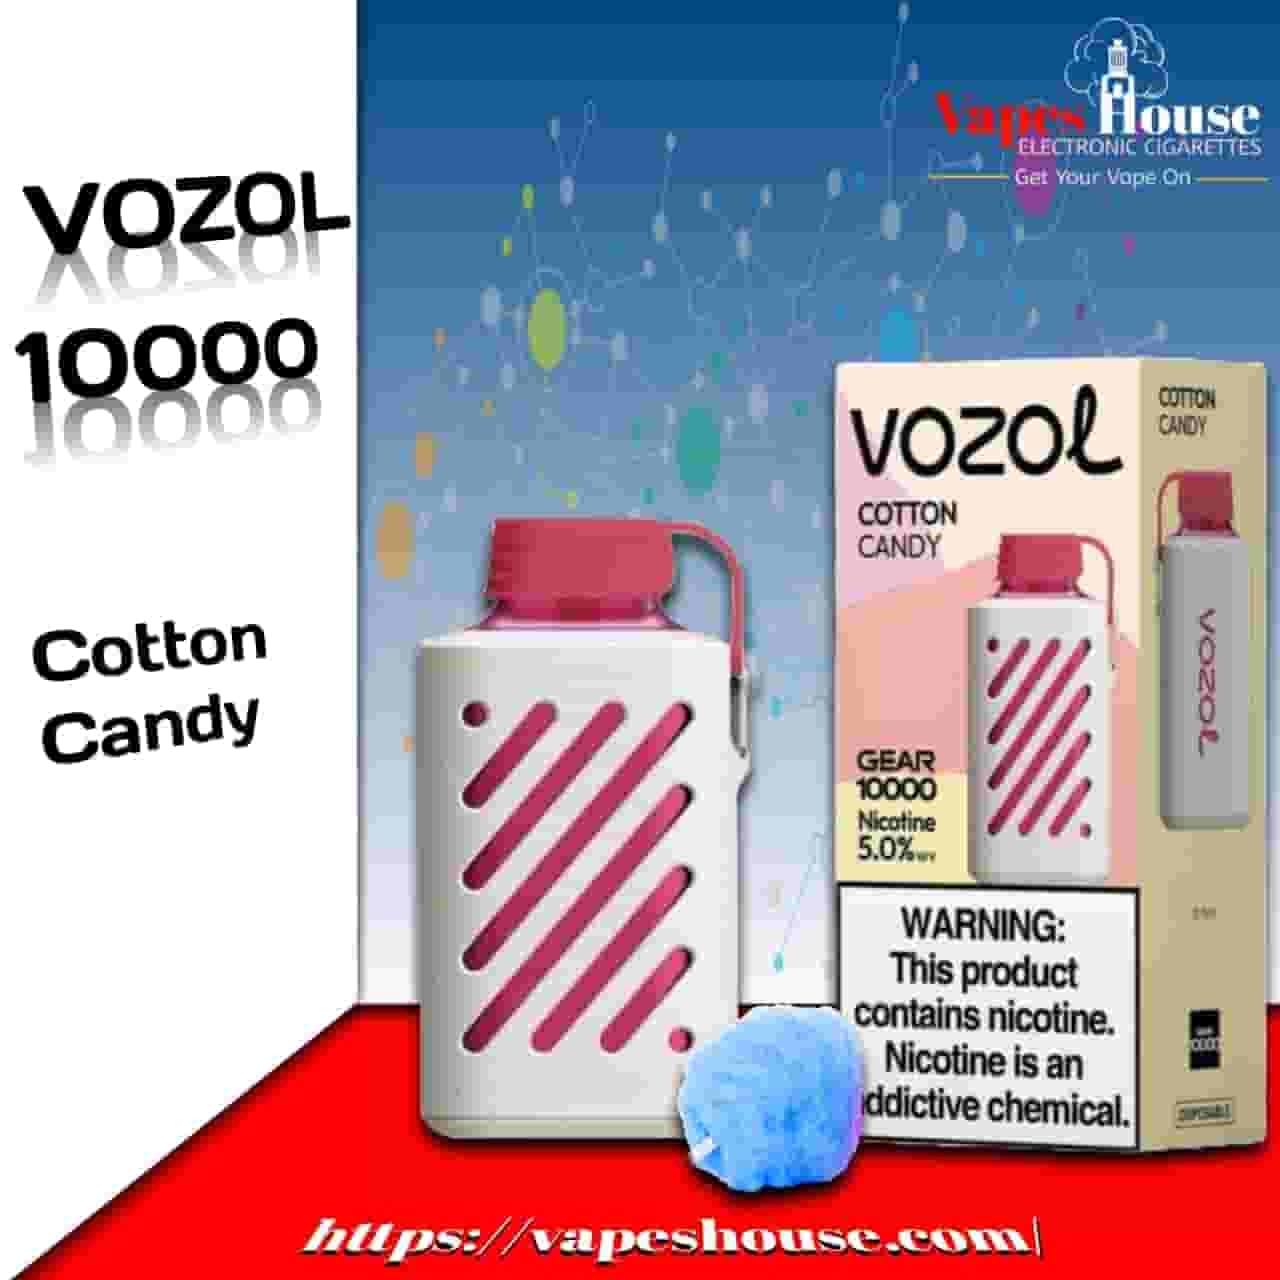 Vozol Gear 10000 Puffs Cotton Candy Disposable Vape